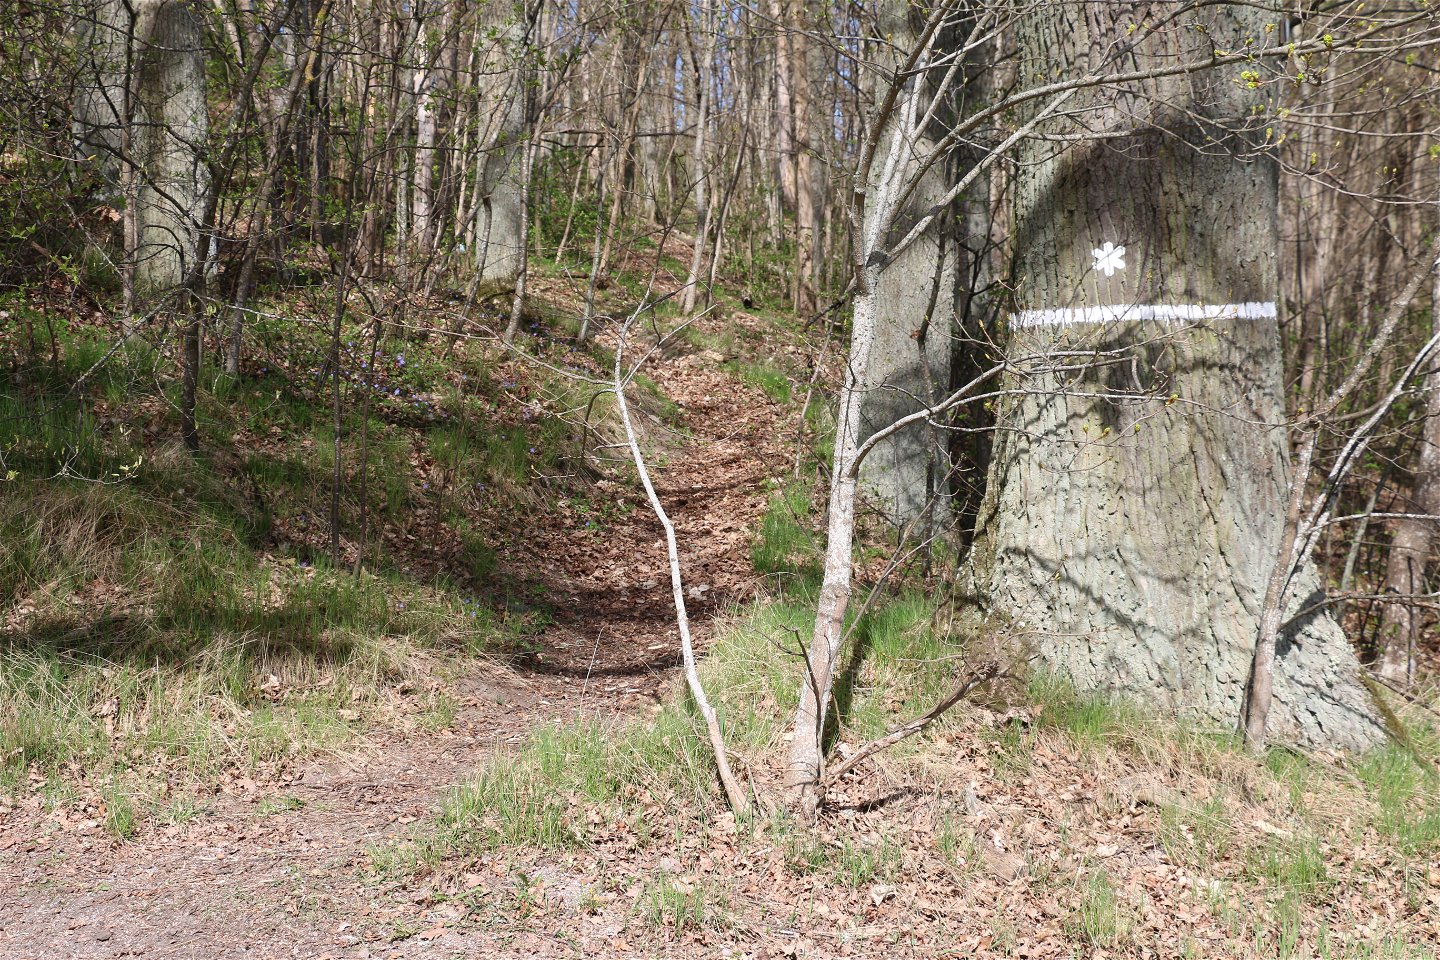 Vit markering på träd som visar att det är ett naturreservat.